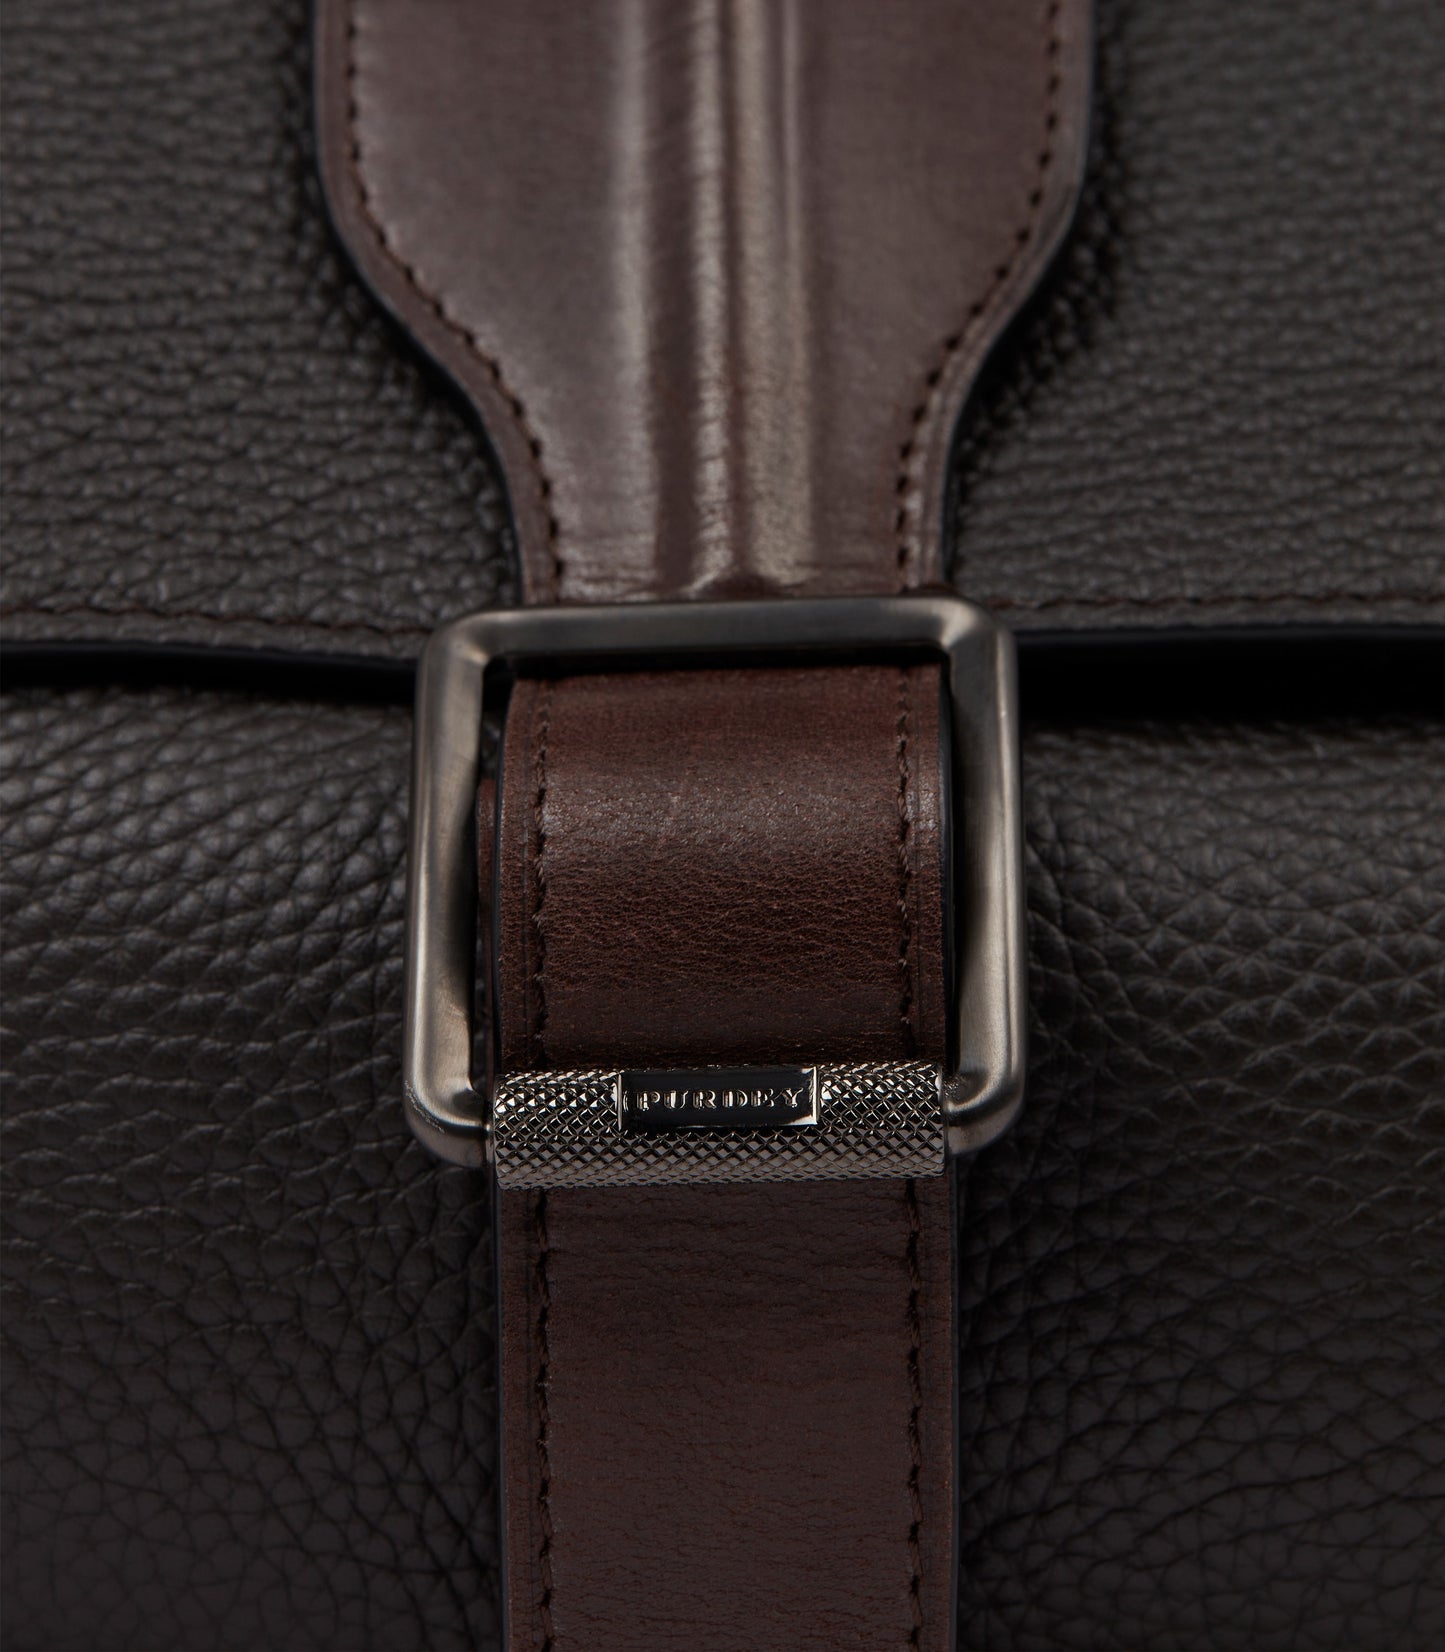 Leather Field Bag In Dark Brown